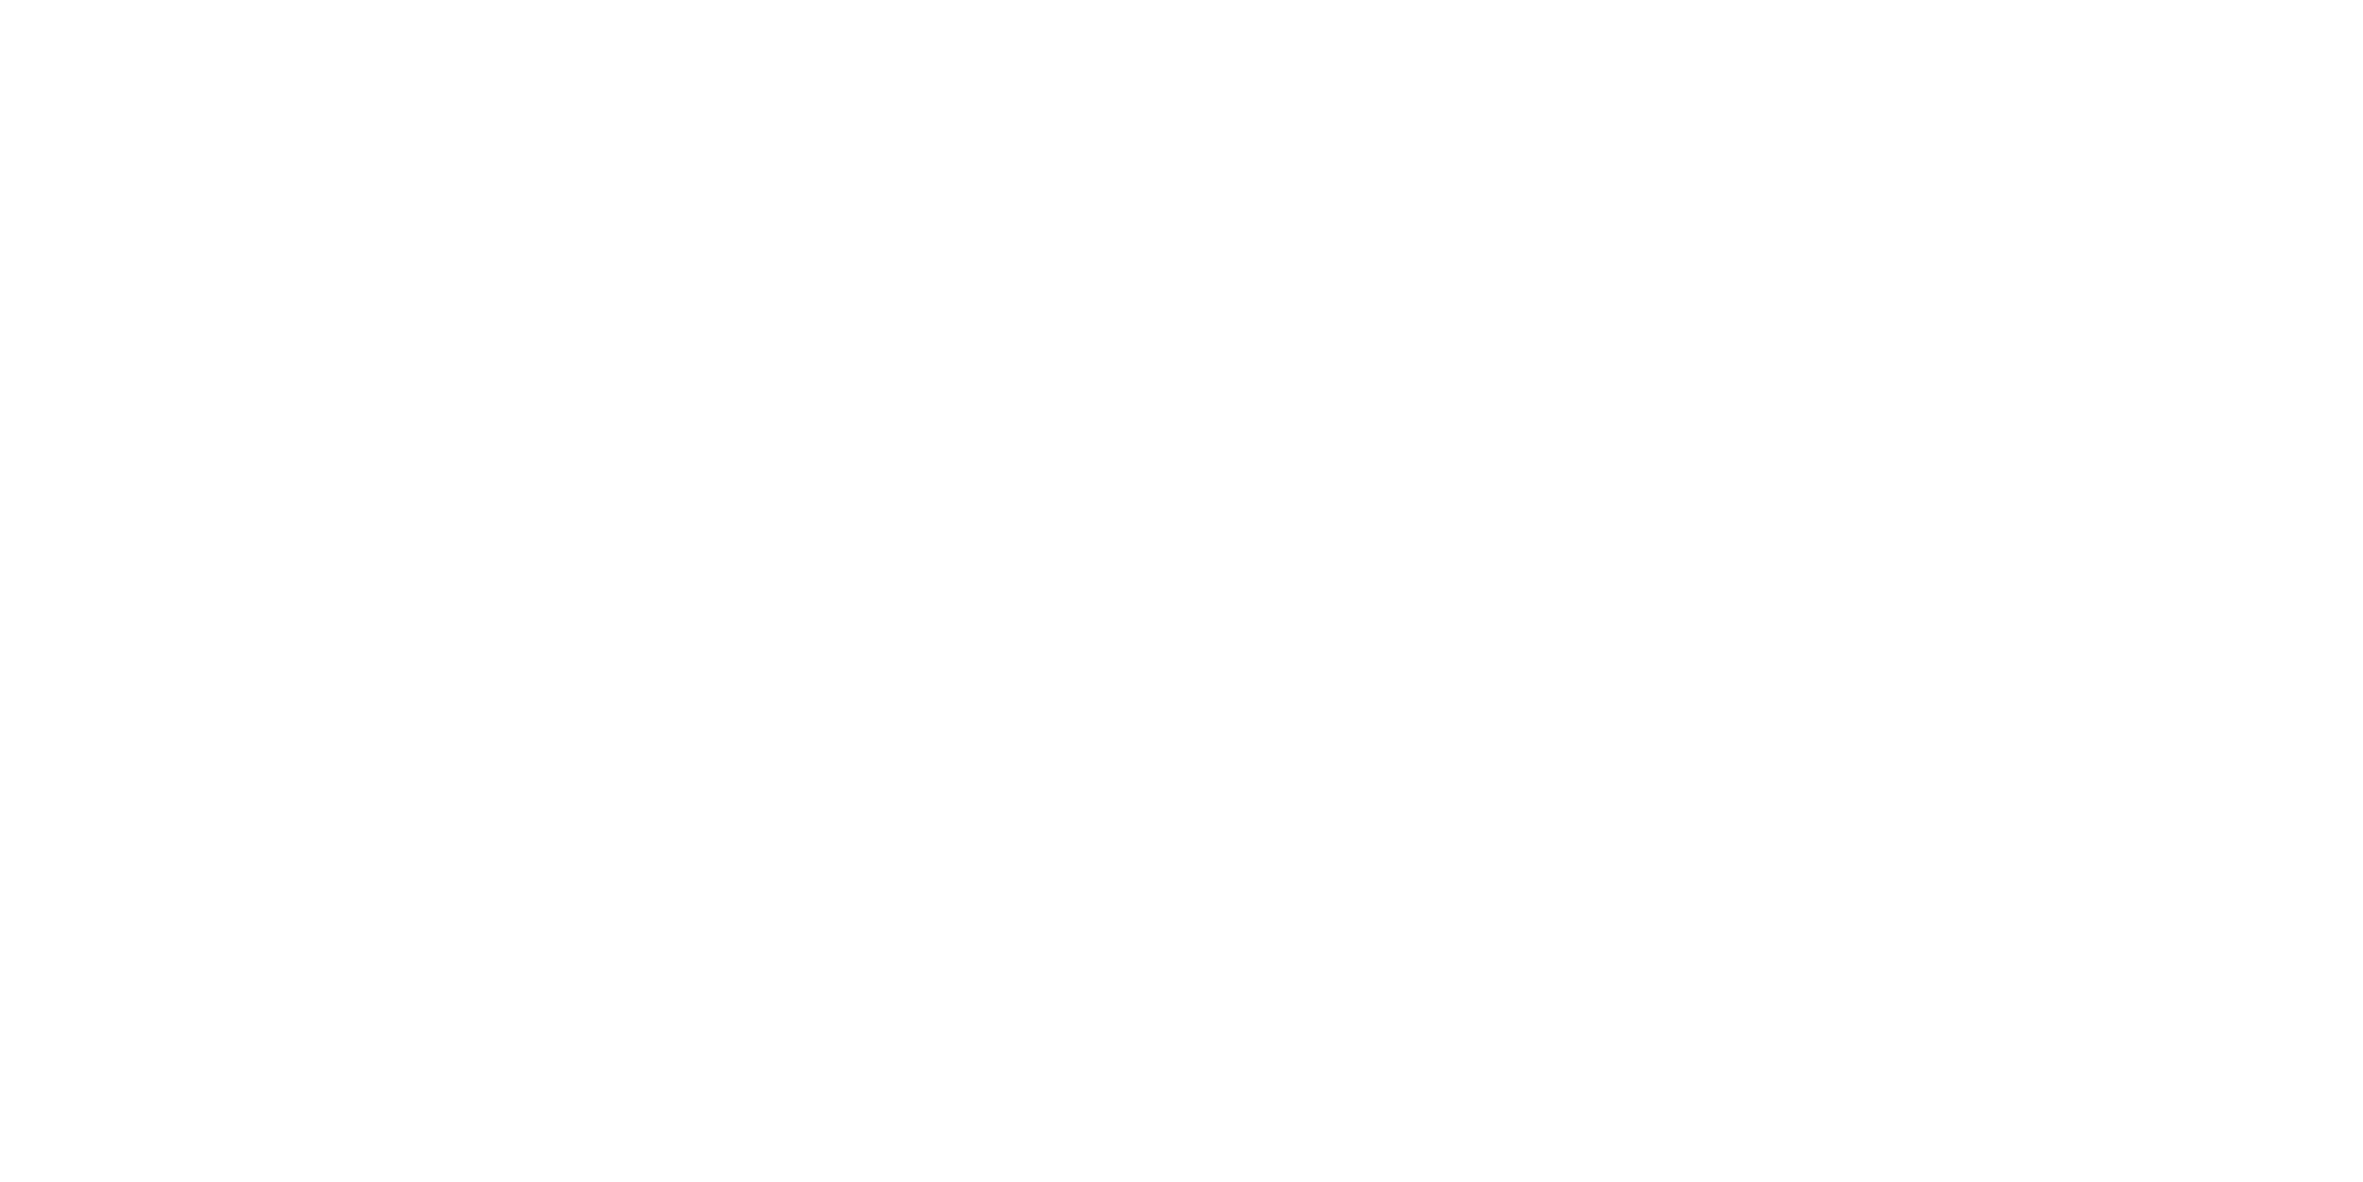 Arka Transport